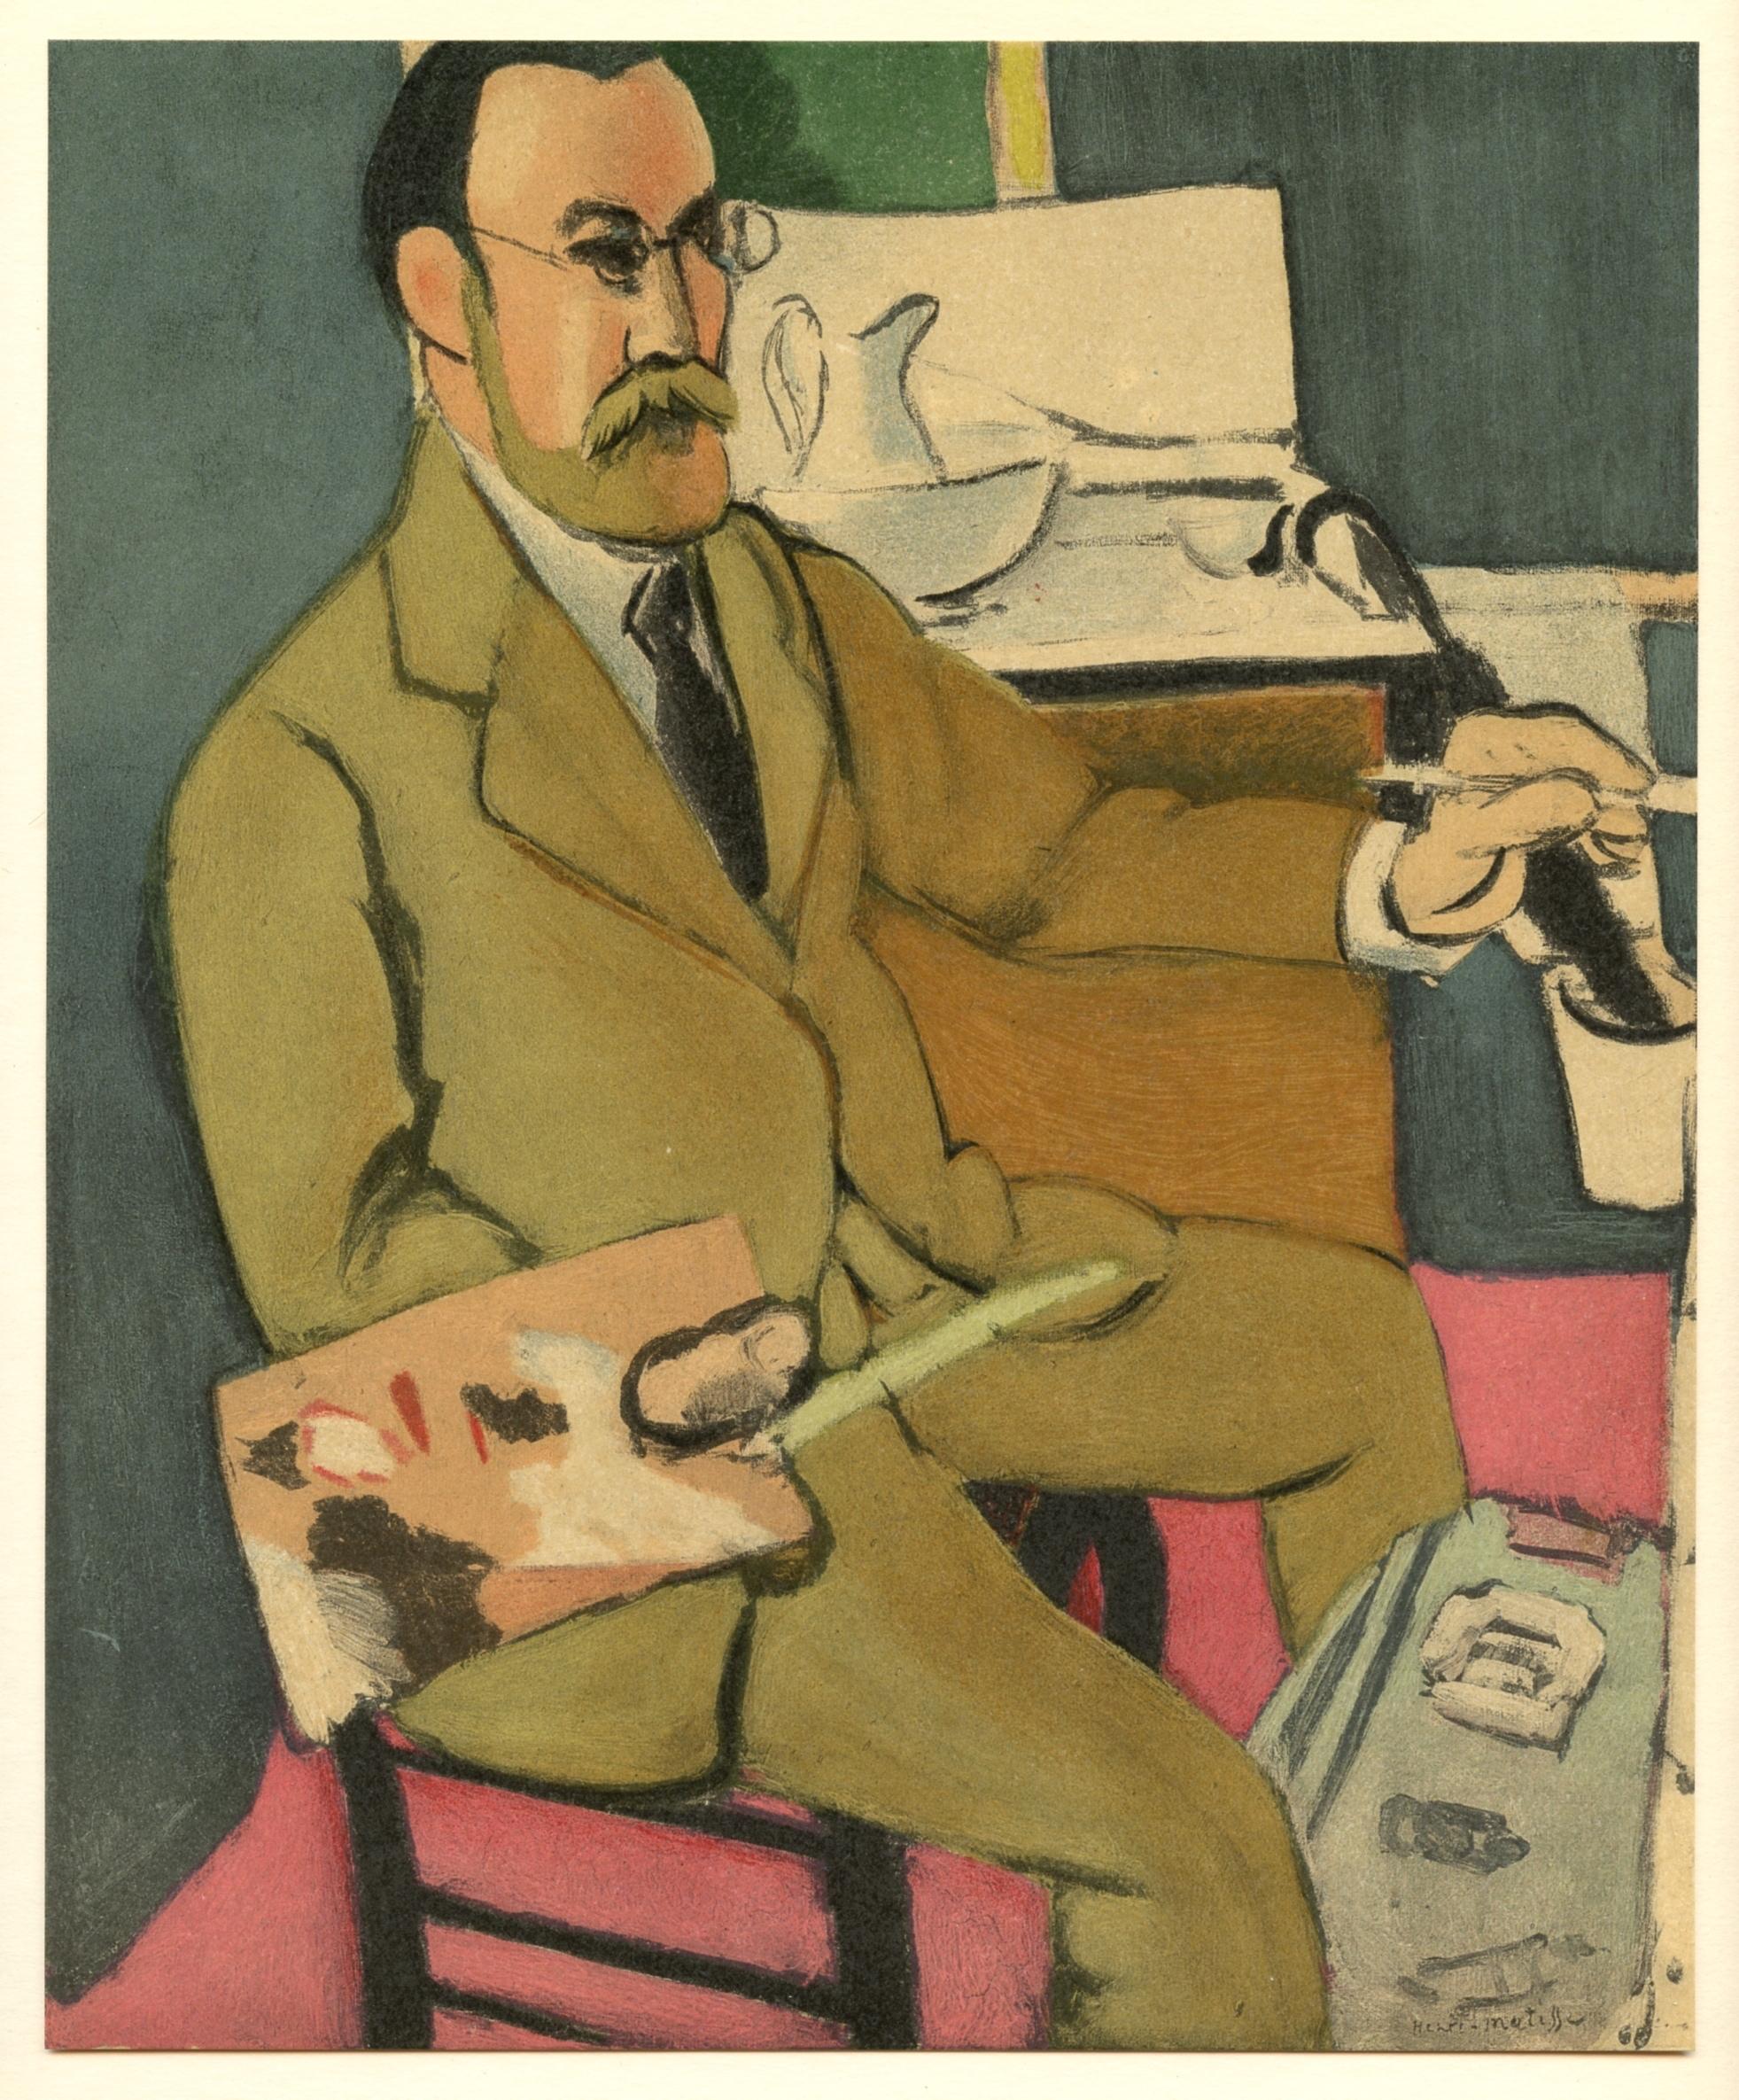 (after) Henri Matisse Portrait Print - "Self Portrait" lithograph